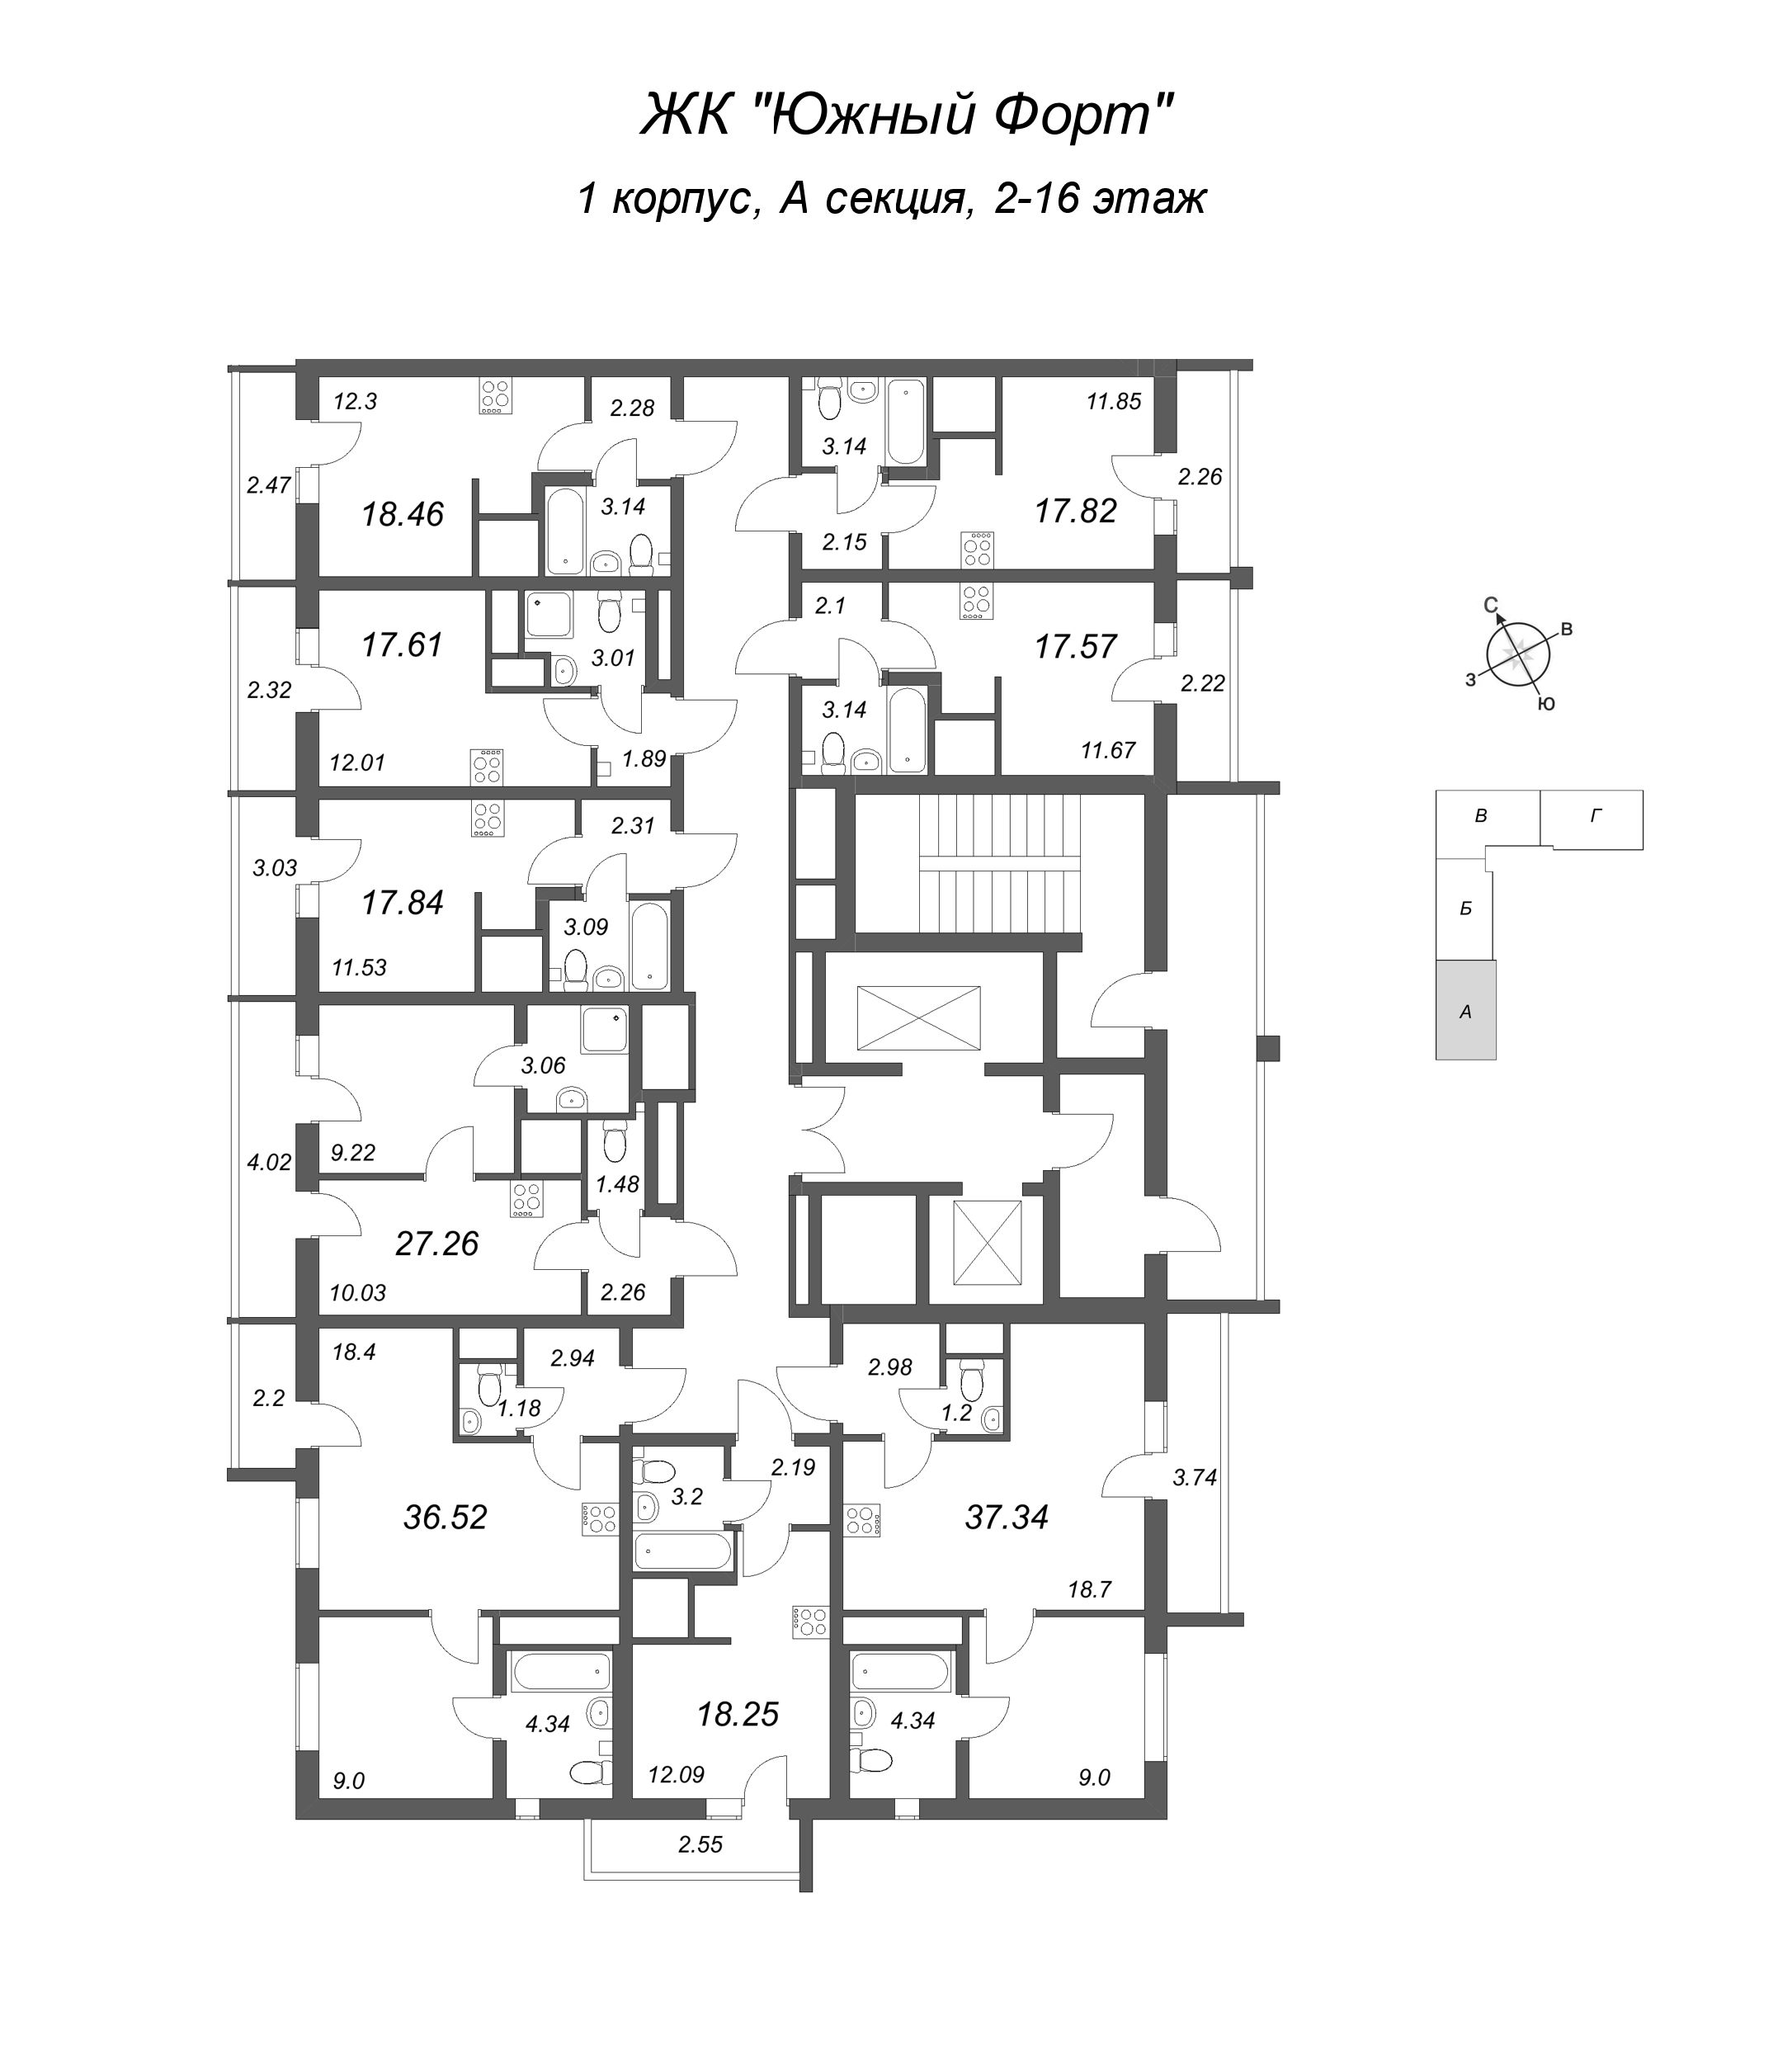 Квартира-студия, 17.84 м² в ЖК "Южный форт" - планировка этажа